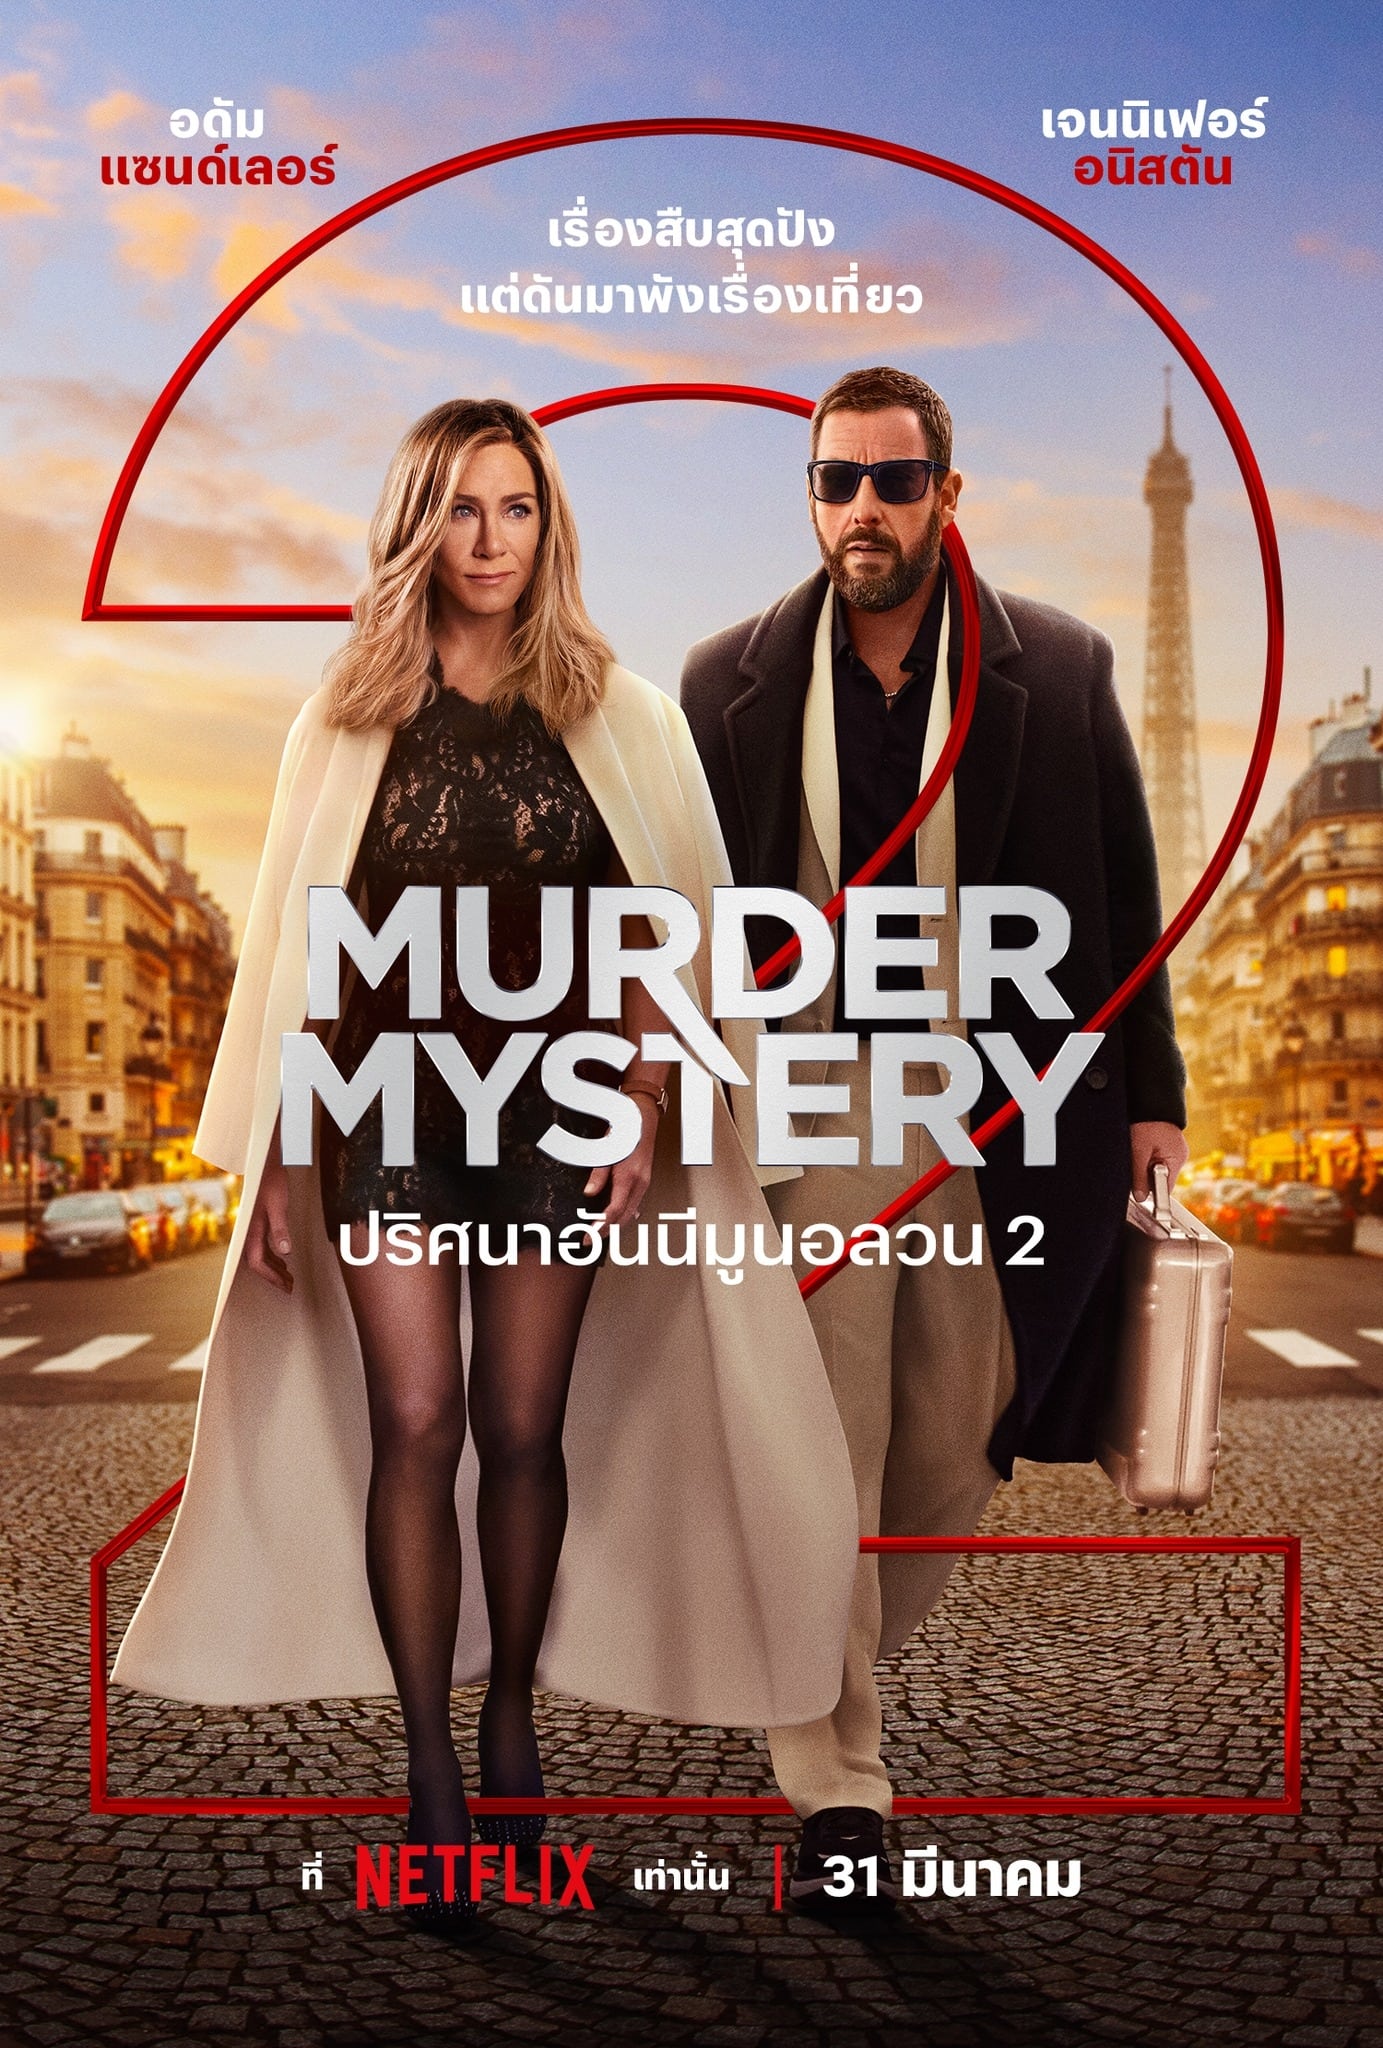 ดูหนังออนไลน์ Murder Mystery 2 ปริศนาฮันนีมูนอลวน 2